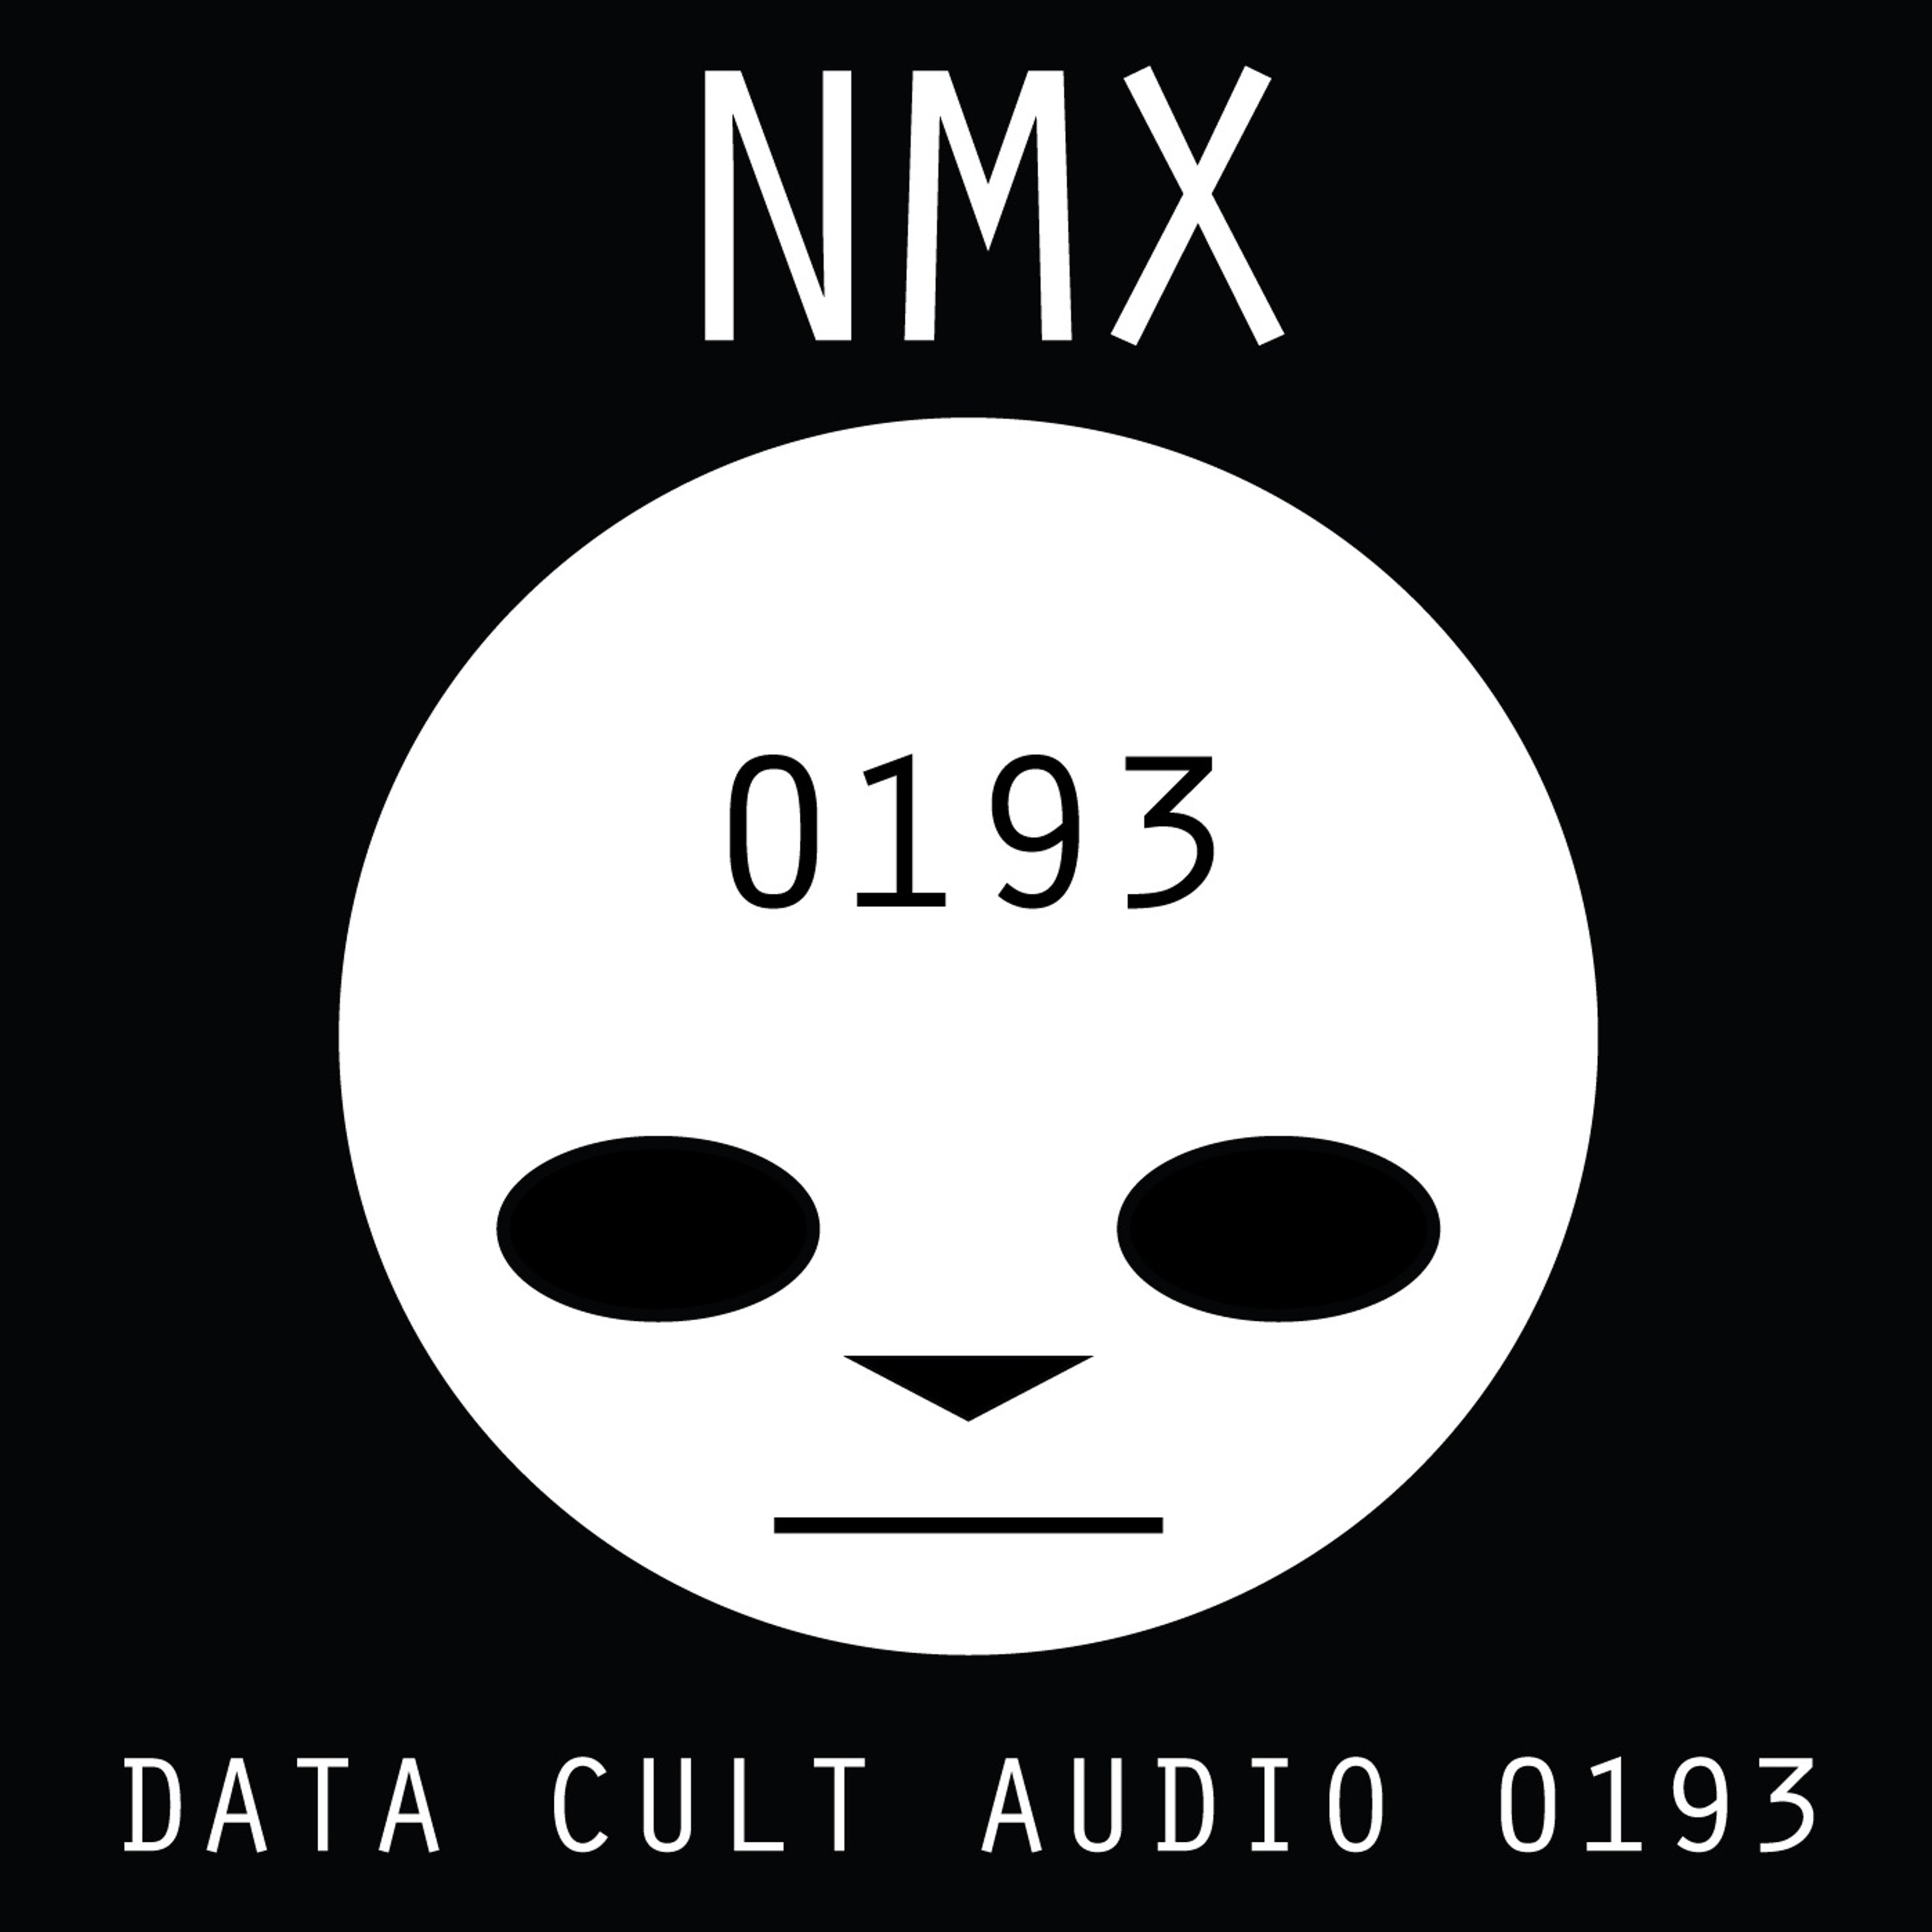 Data Cult Audio 0193 - NMX